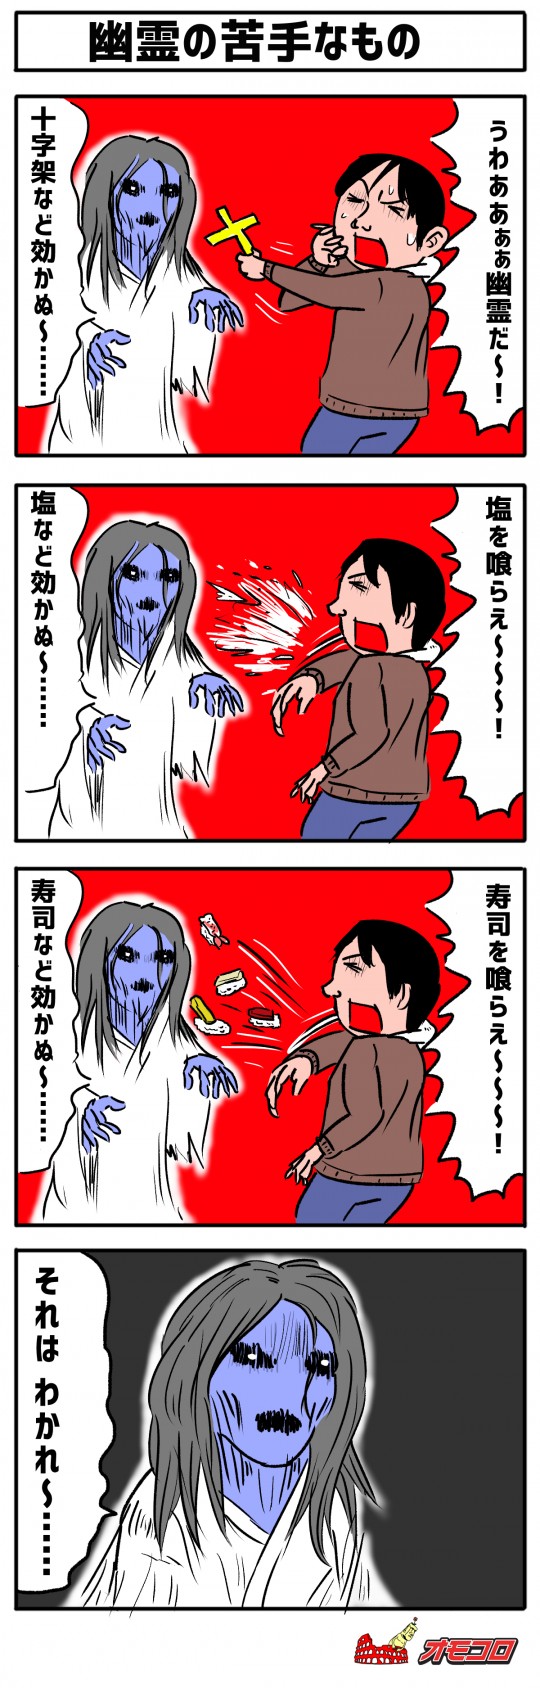 【4コマ漫画】幽霊の苦手なもの